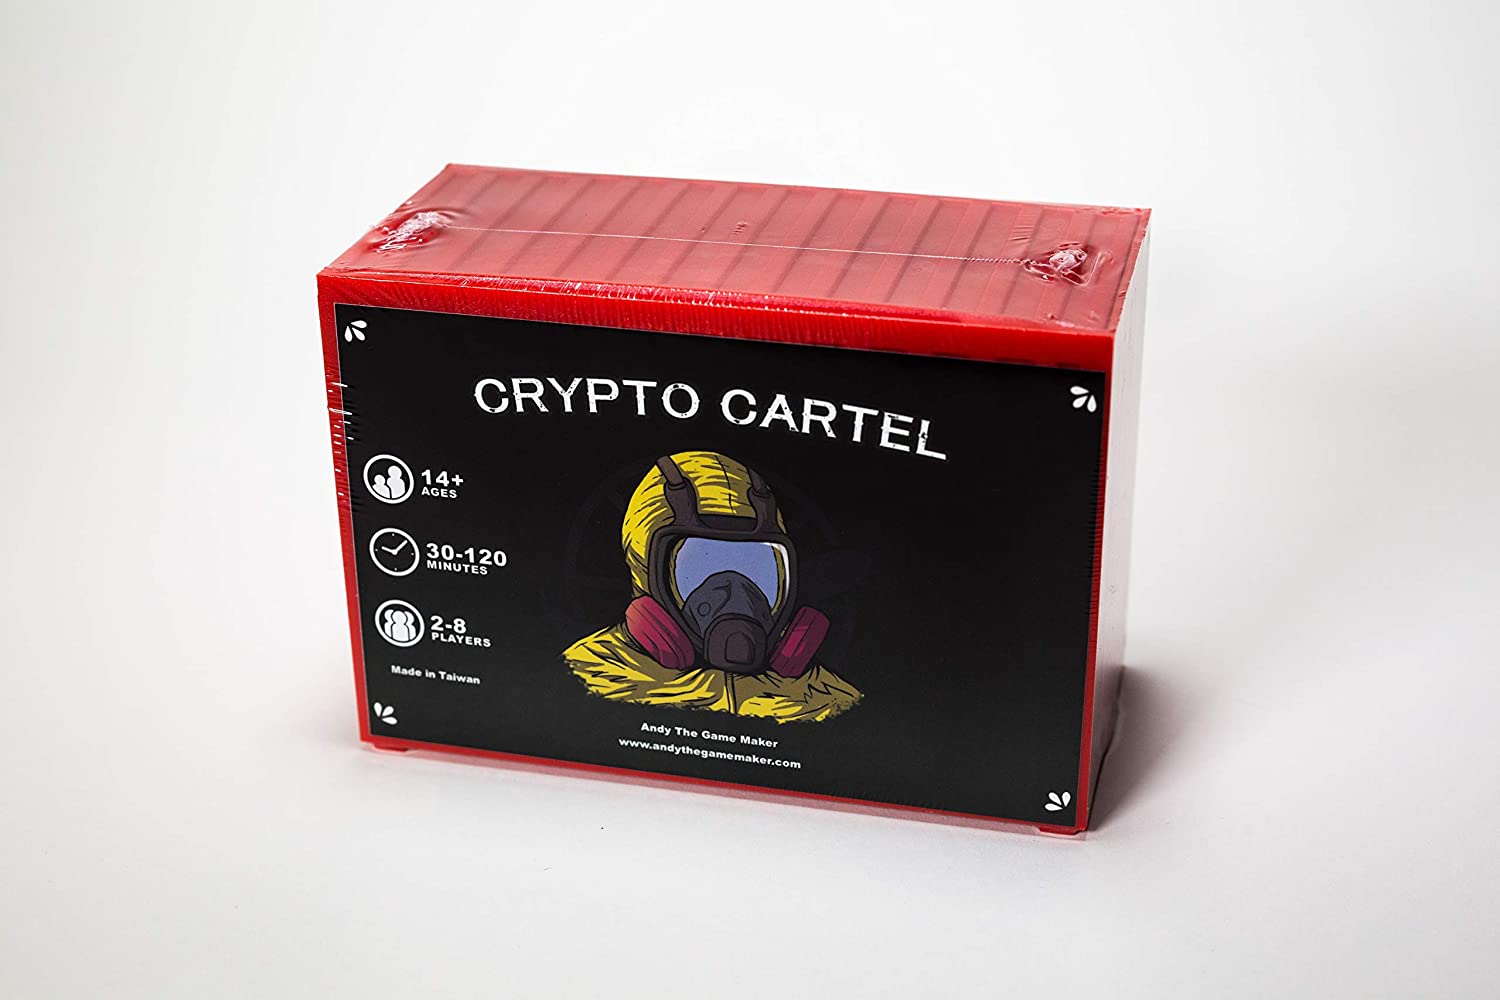 Crypto Cartel box